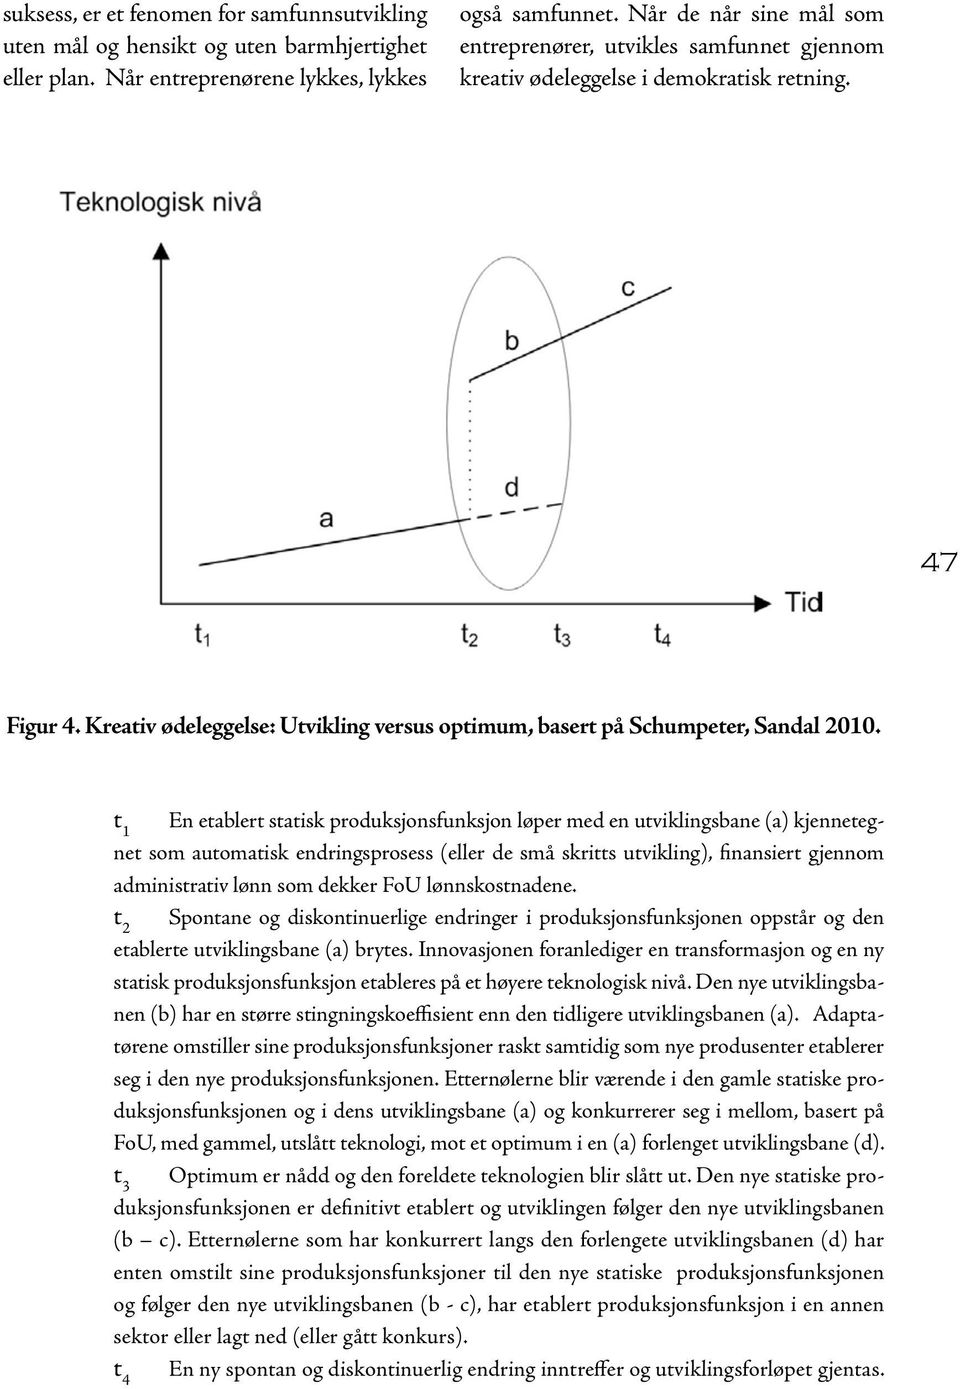 Kreativ ødeleggelse: Utvikling versus optimum, basert på Schumpeter, Sandal 2010.